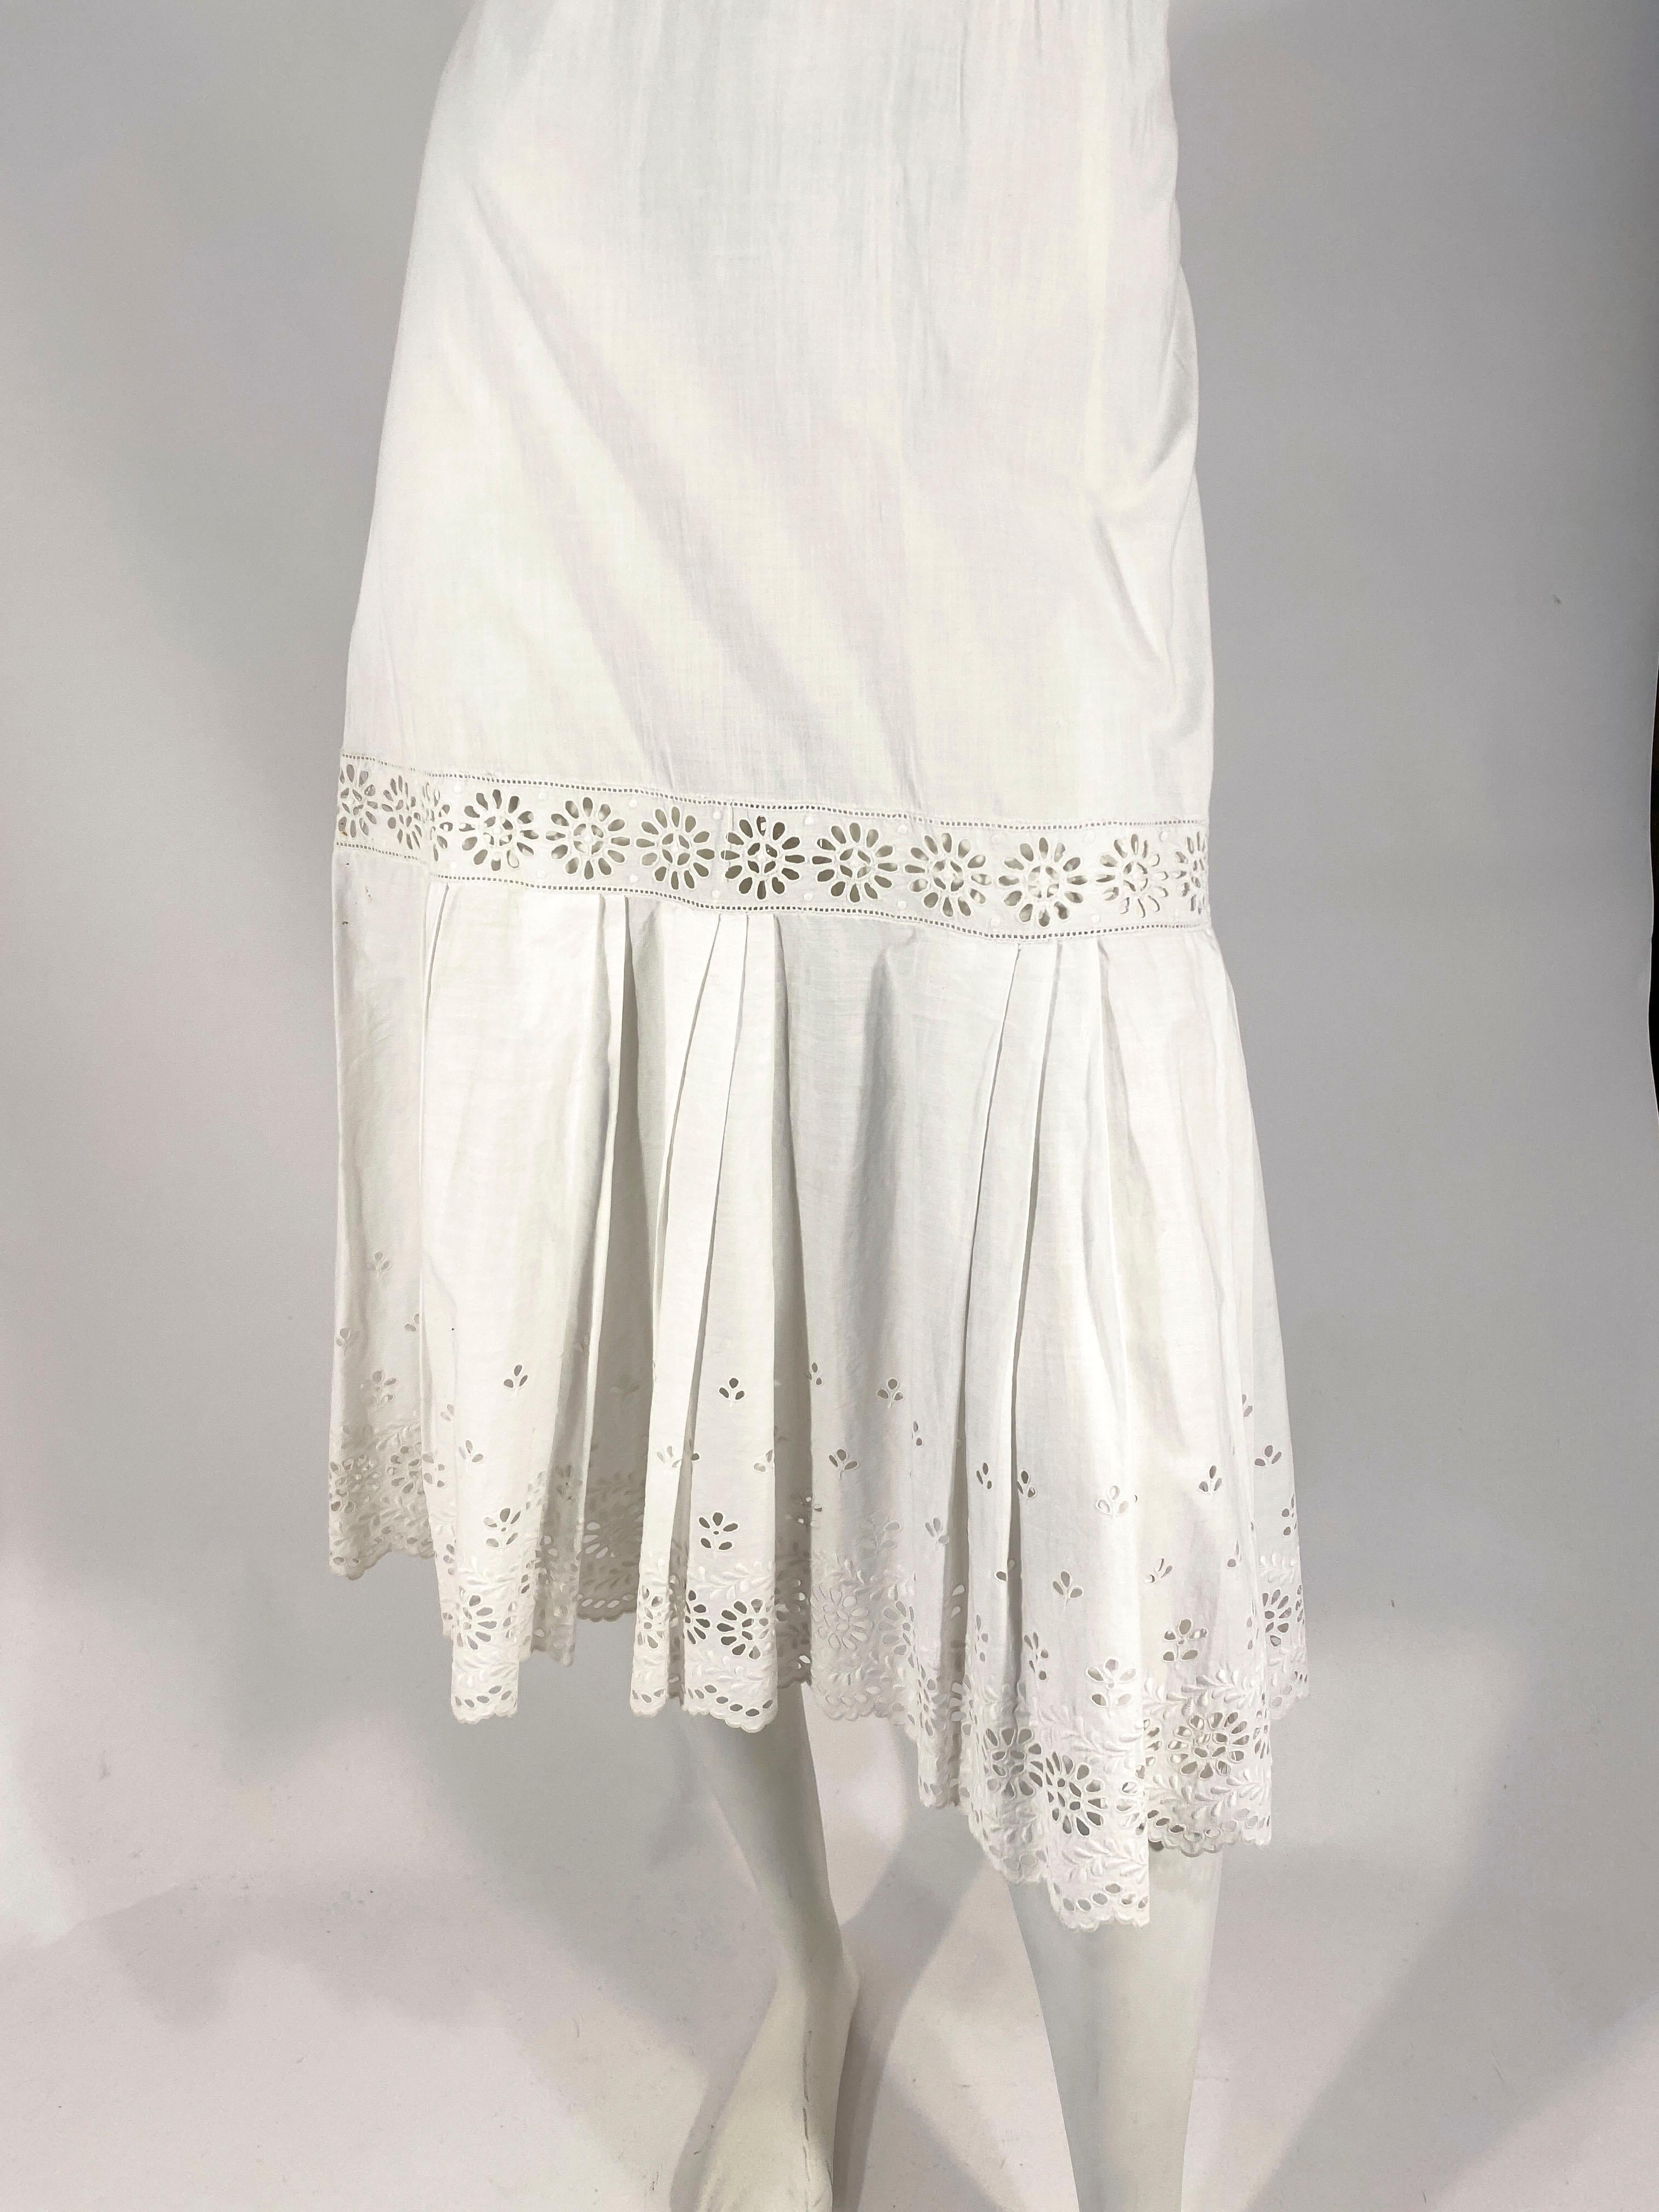 1900s petticoat